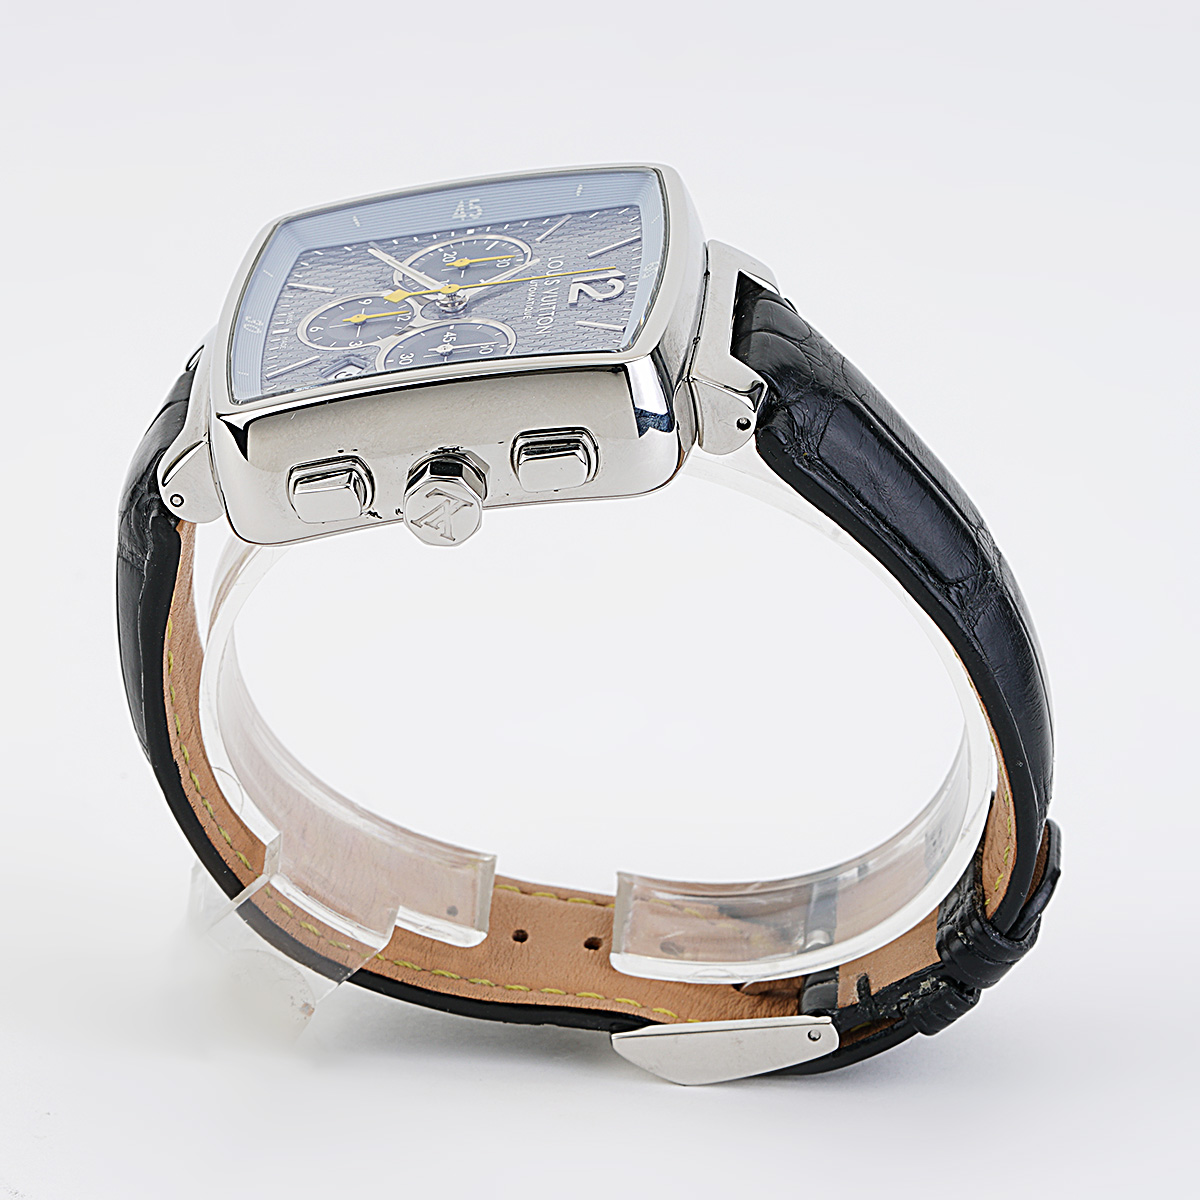 Louis Vuitton Silver Dial Steel Speedy Automatic Men'S Watch 40Mm